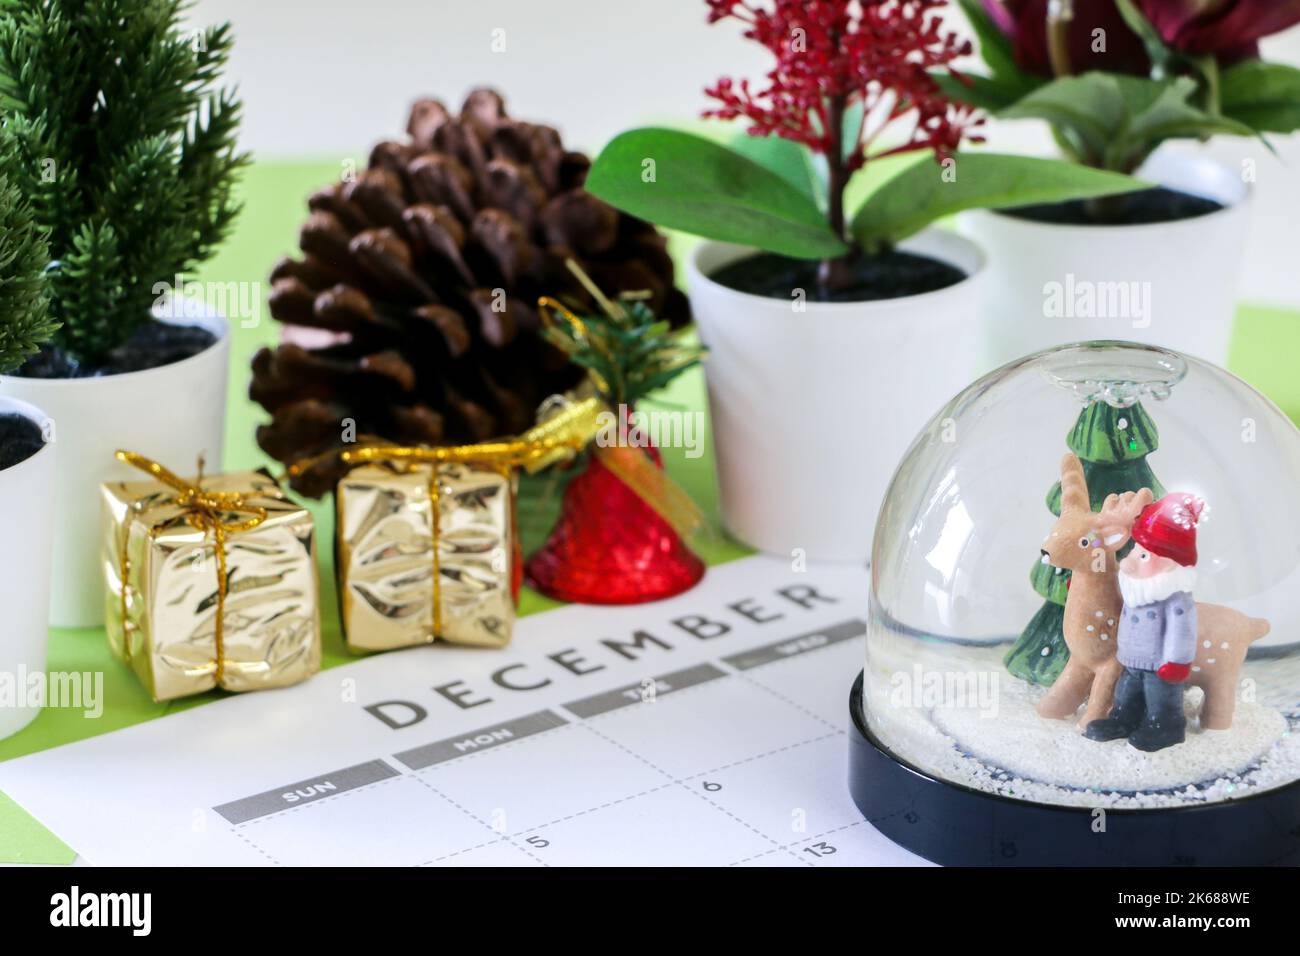 Concept de Noël, boule de neige festive sur le calendrier de décembre, hors de focus dans l'arrière-plan sont des décorations telles que des plantes, des cônes de pin, des cadeaux enveloppés d'or, Banque D'Images